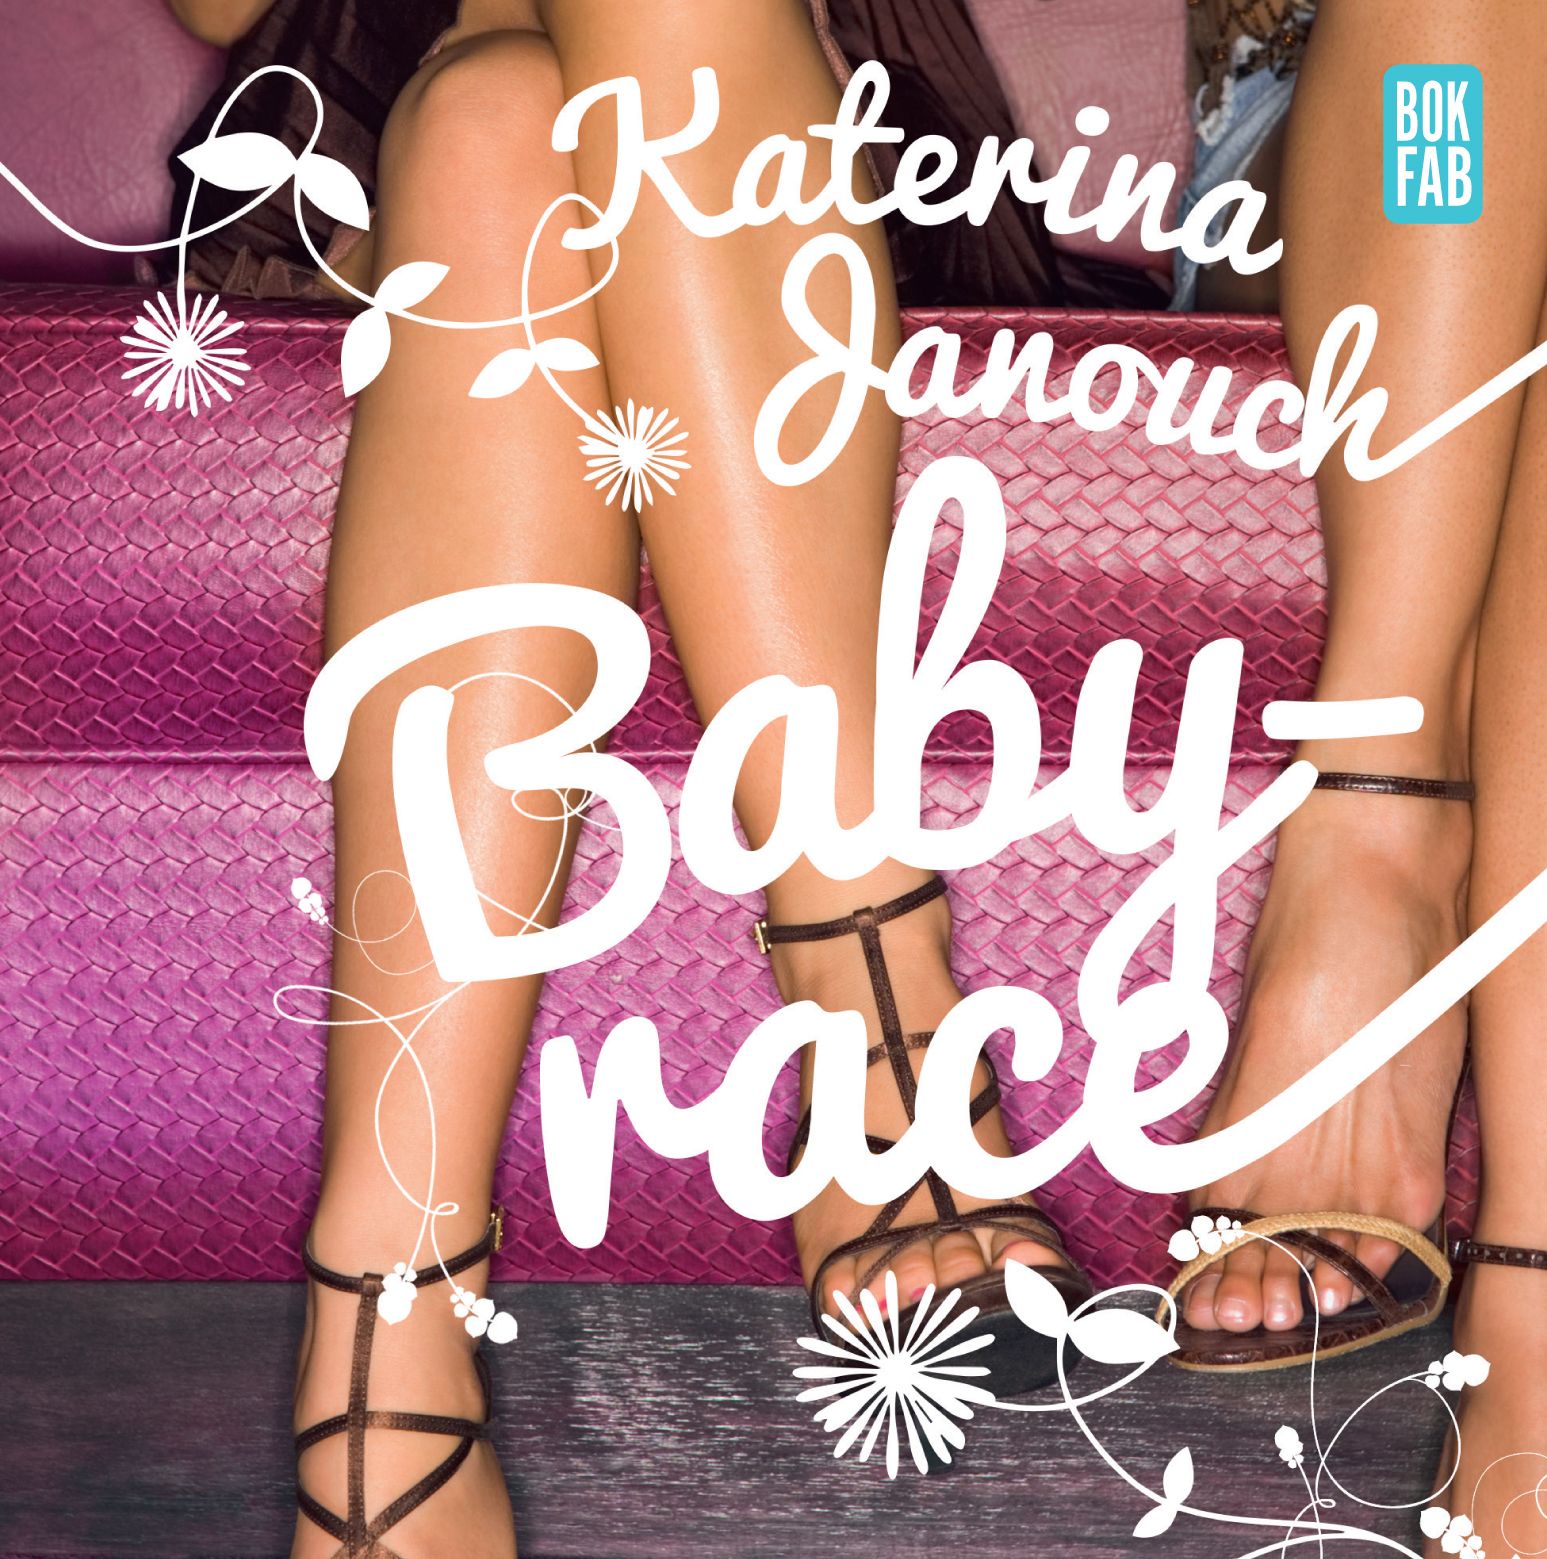 Babyrace, audiobook by Katerina Janouch